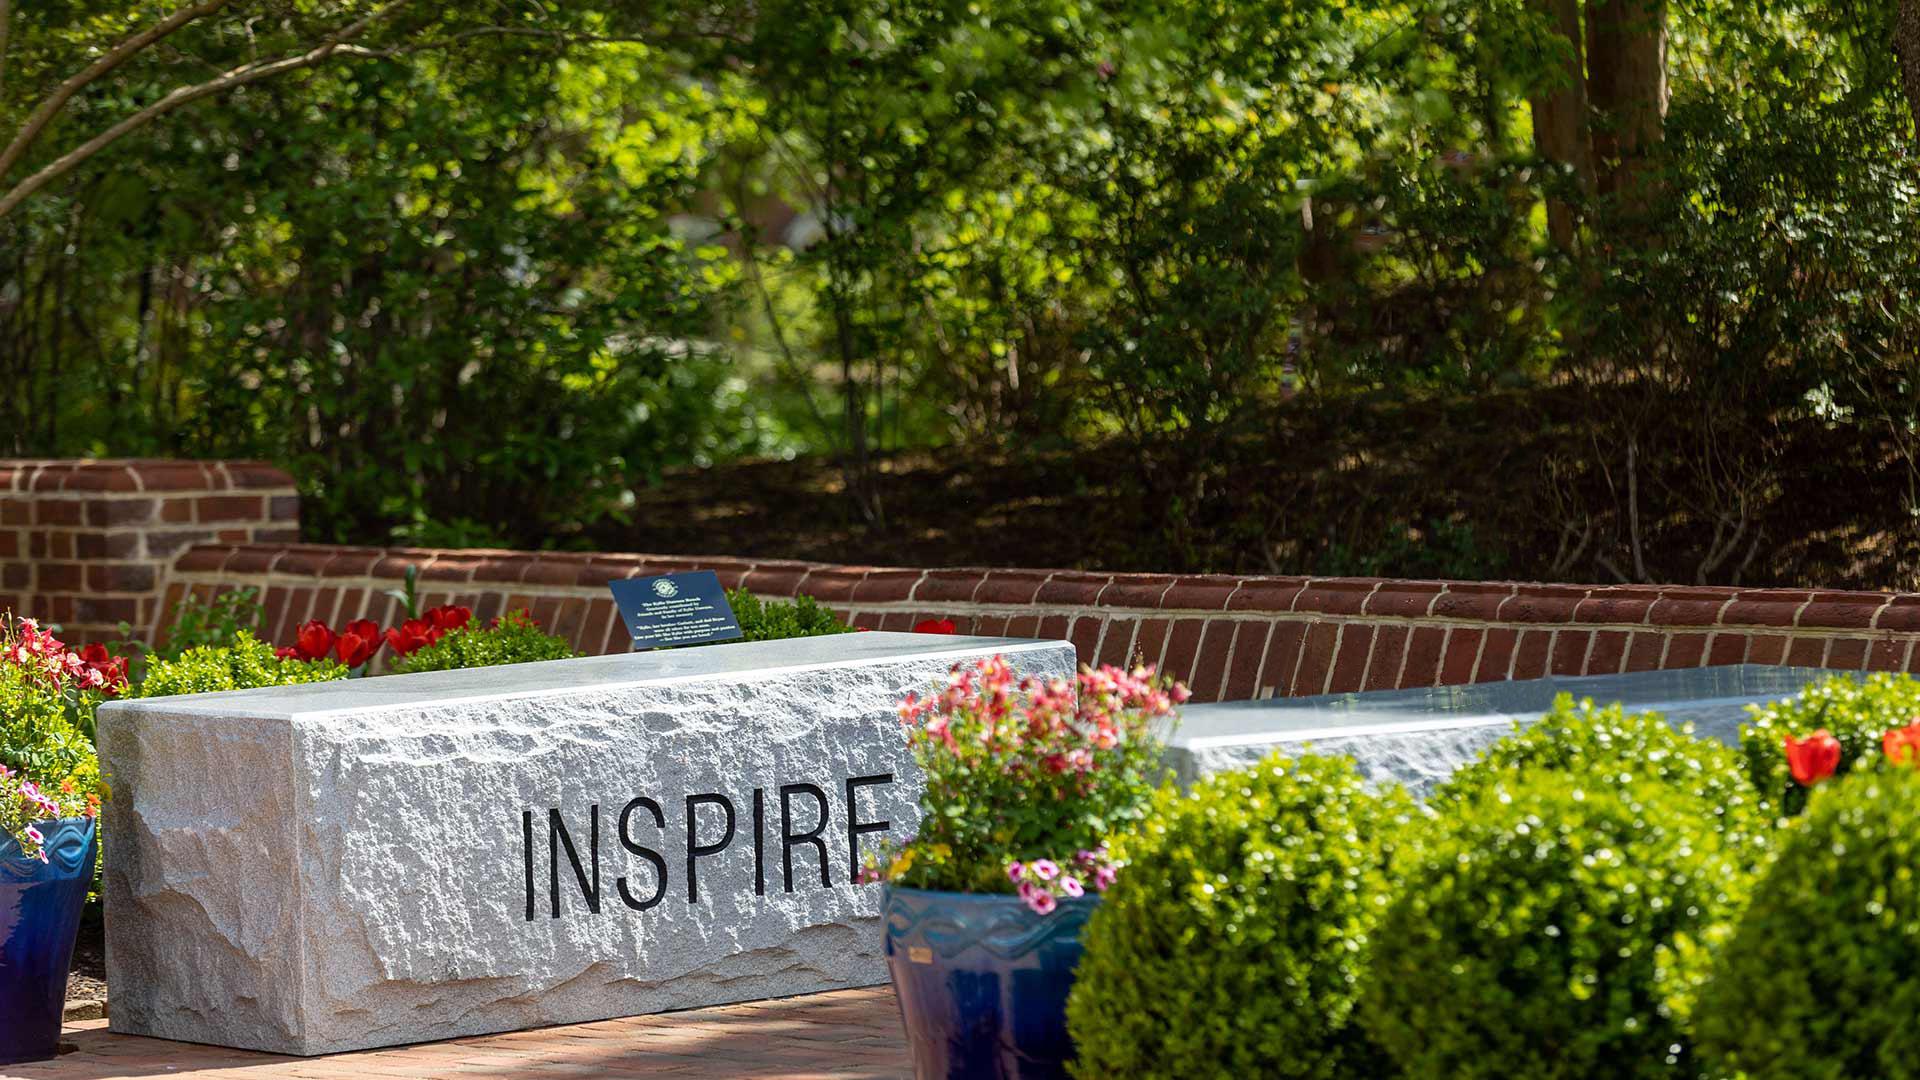 "INSPIRE" written on granite bench